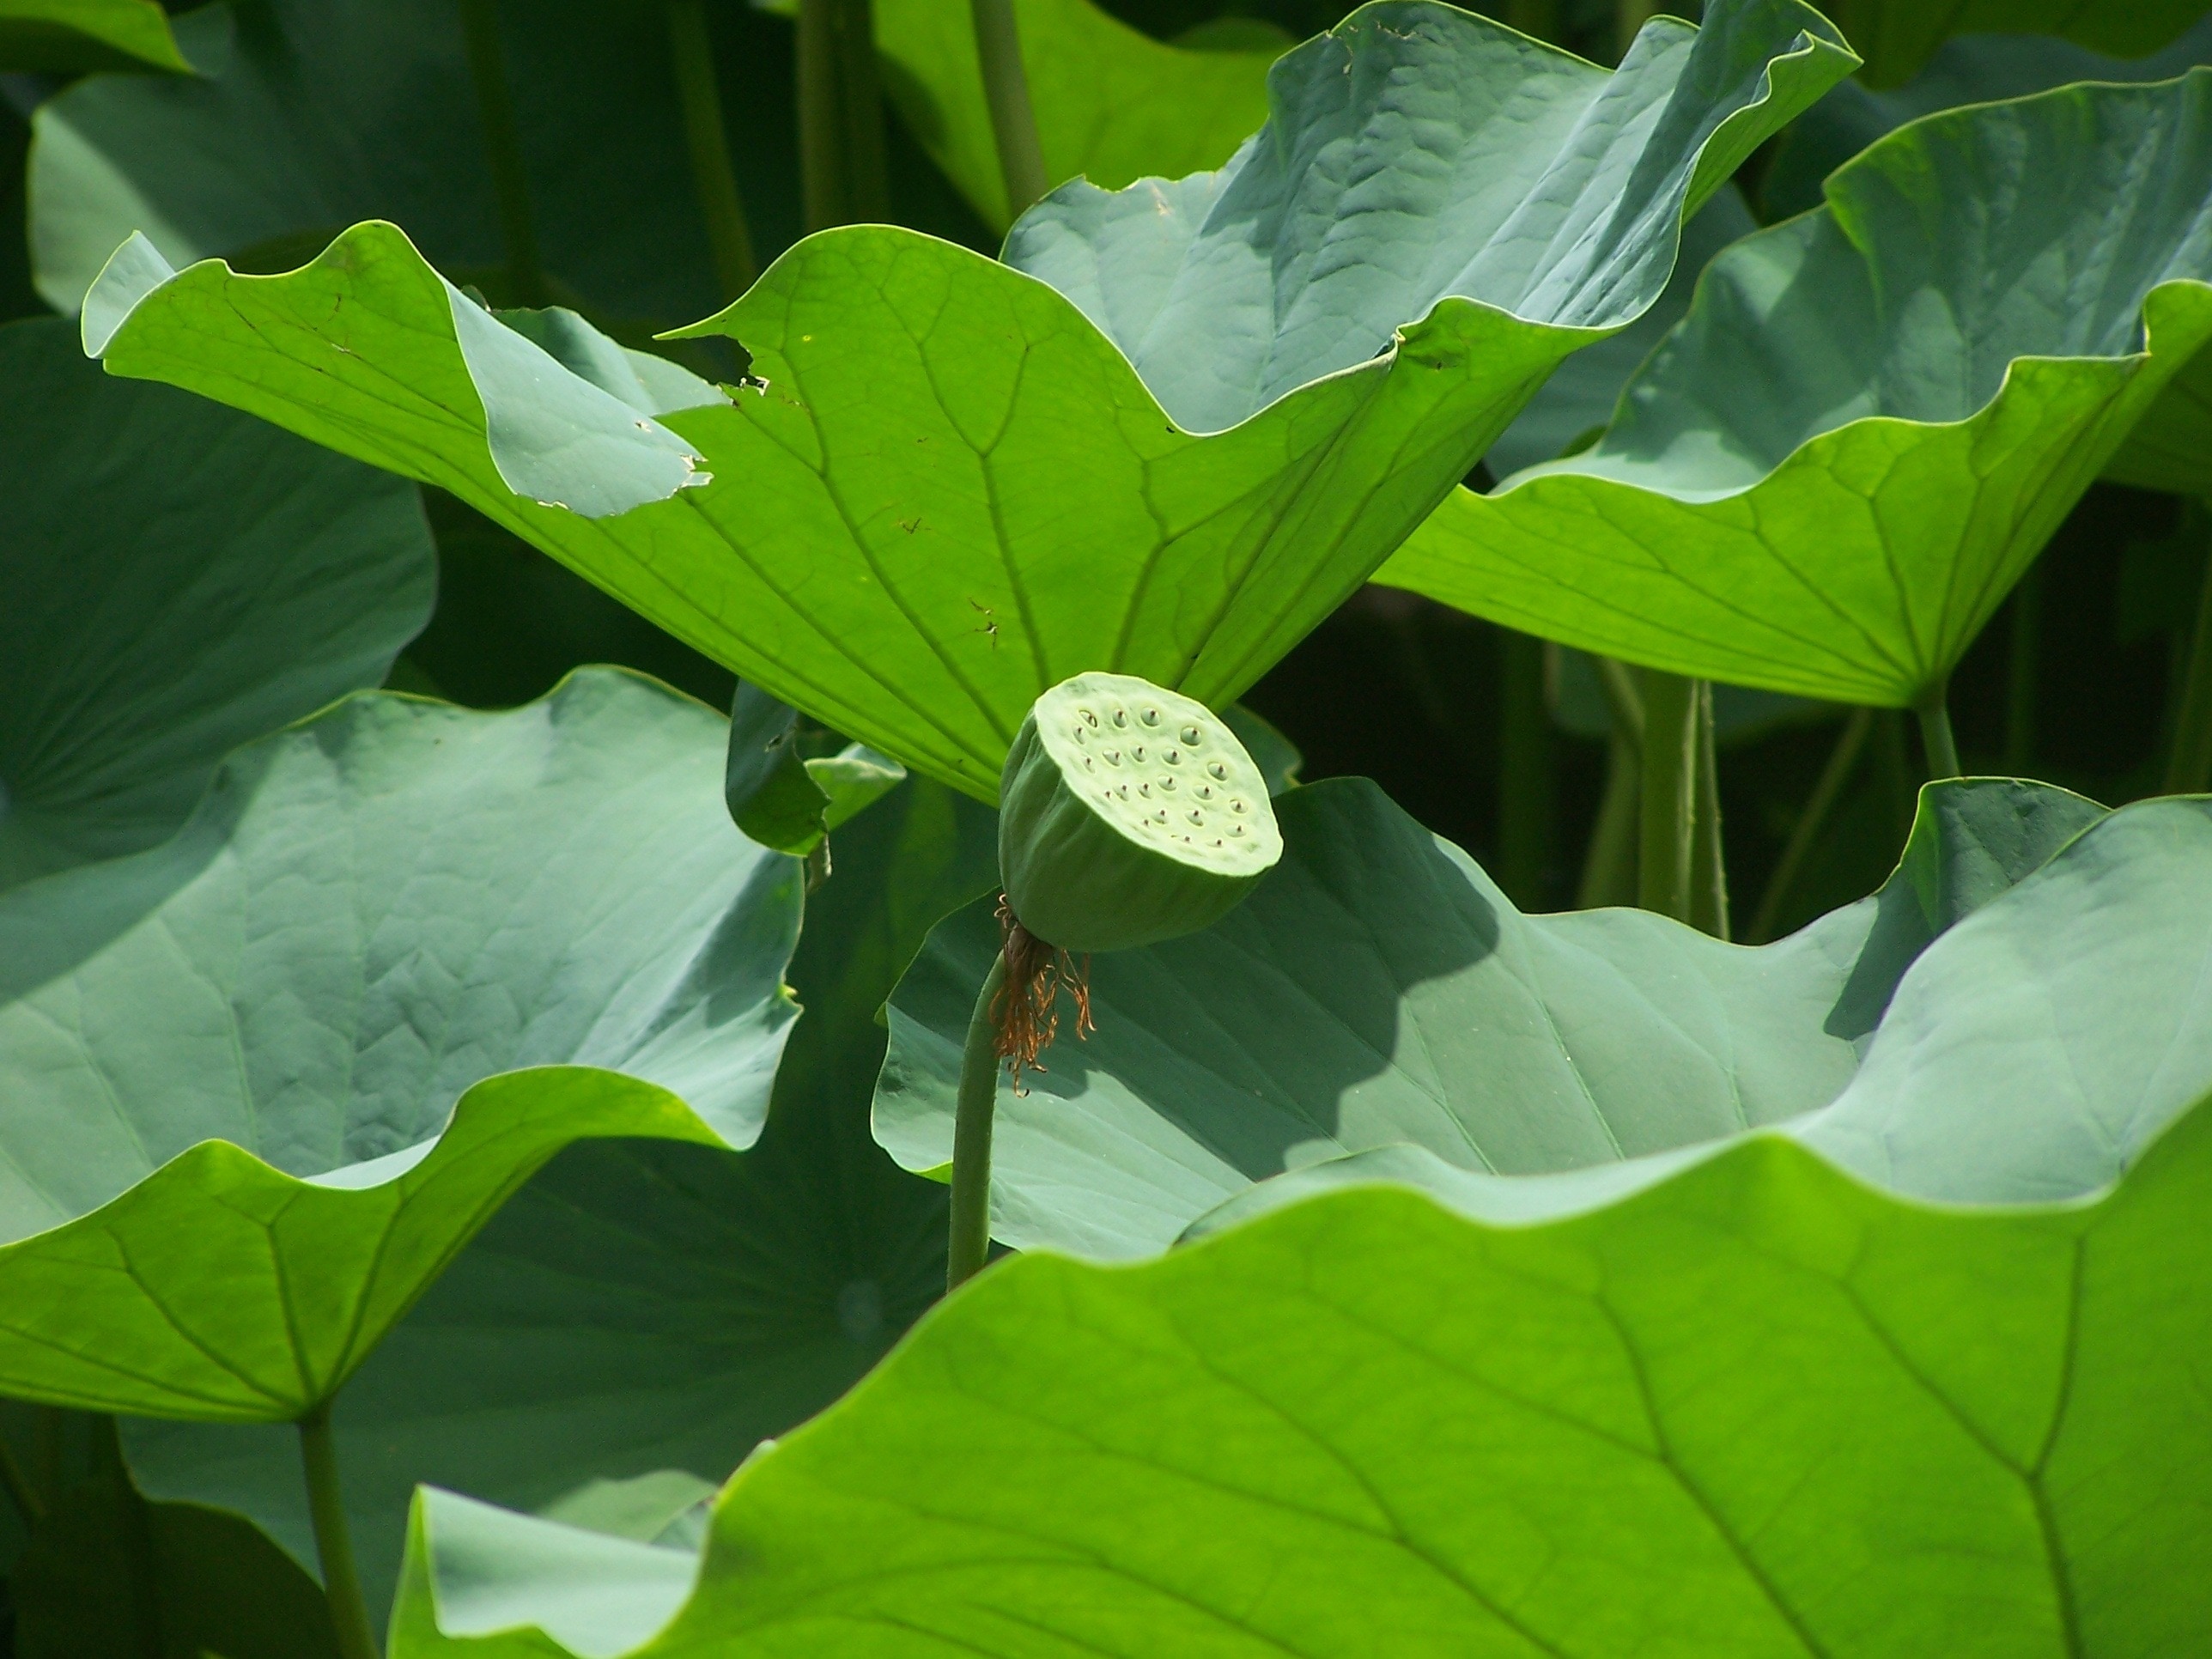 Lotus Seed Head, Lotus, Leaves, leaf, green color